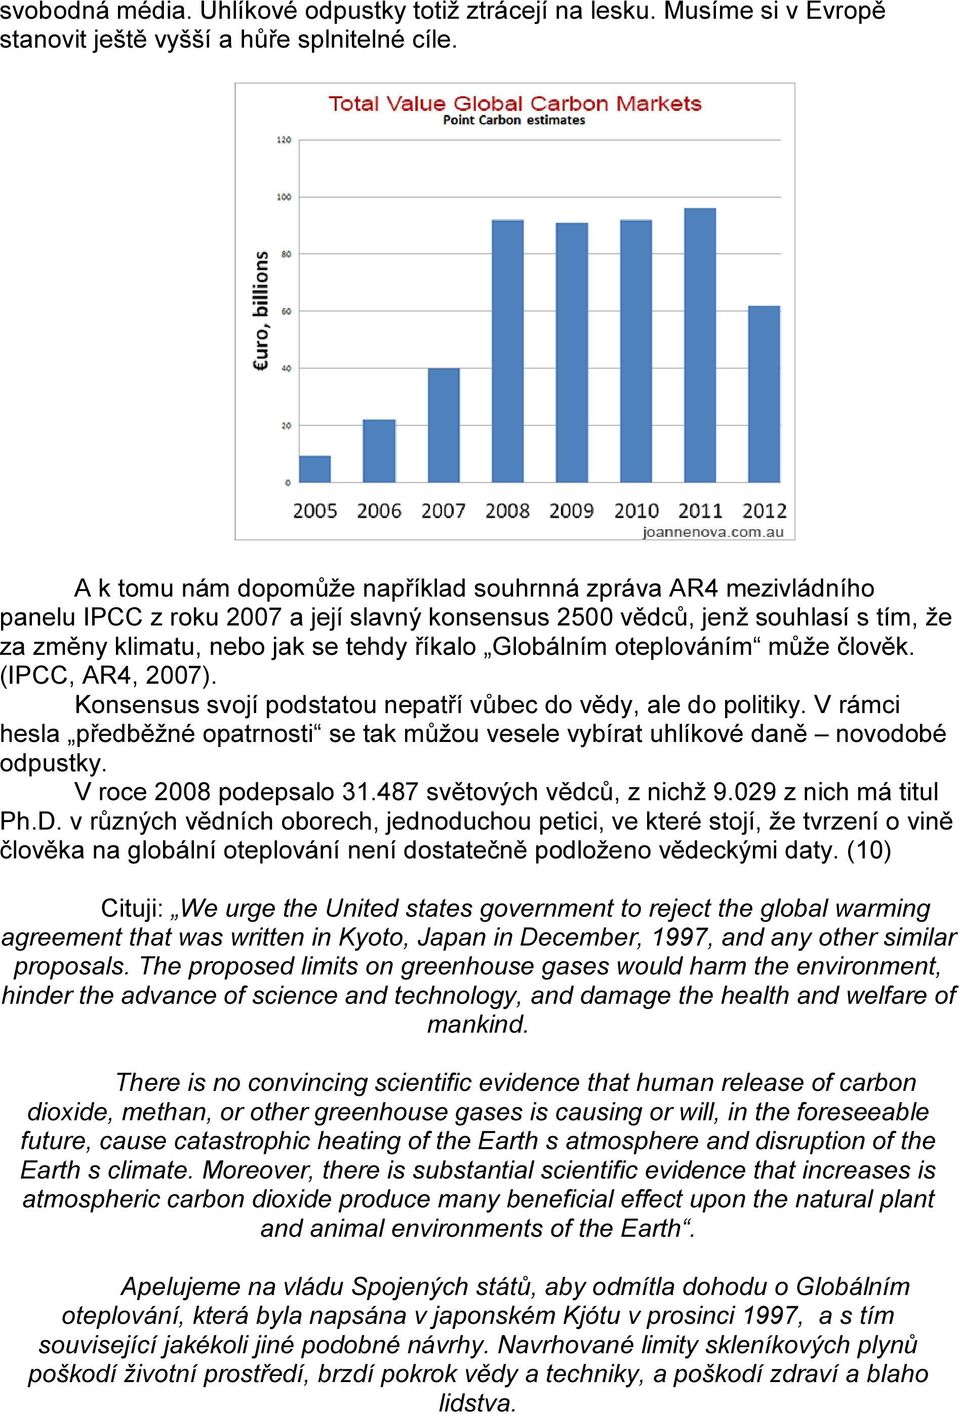 Globálním oteplováním může člověk. (IPCC, AR4, 2007). Konsensus svojí podstatou nepatří vůbec do vědy, ale do politiky.